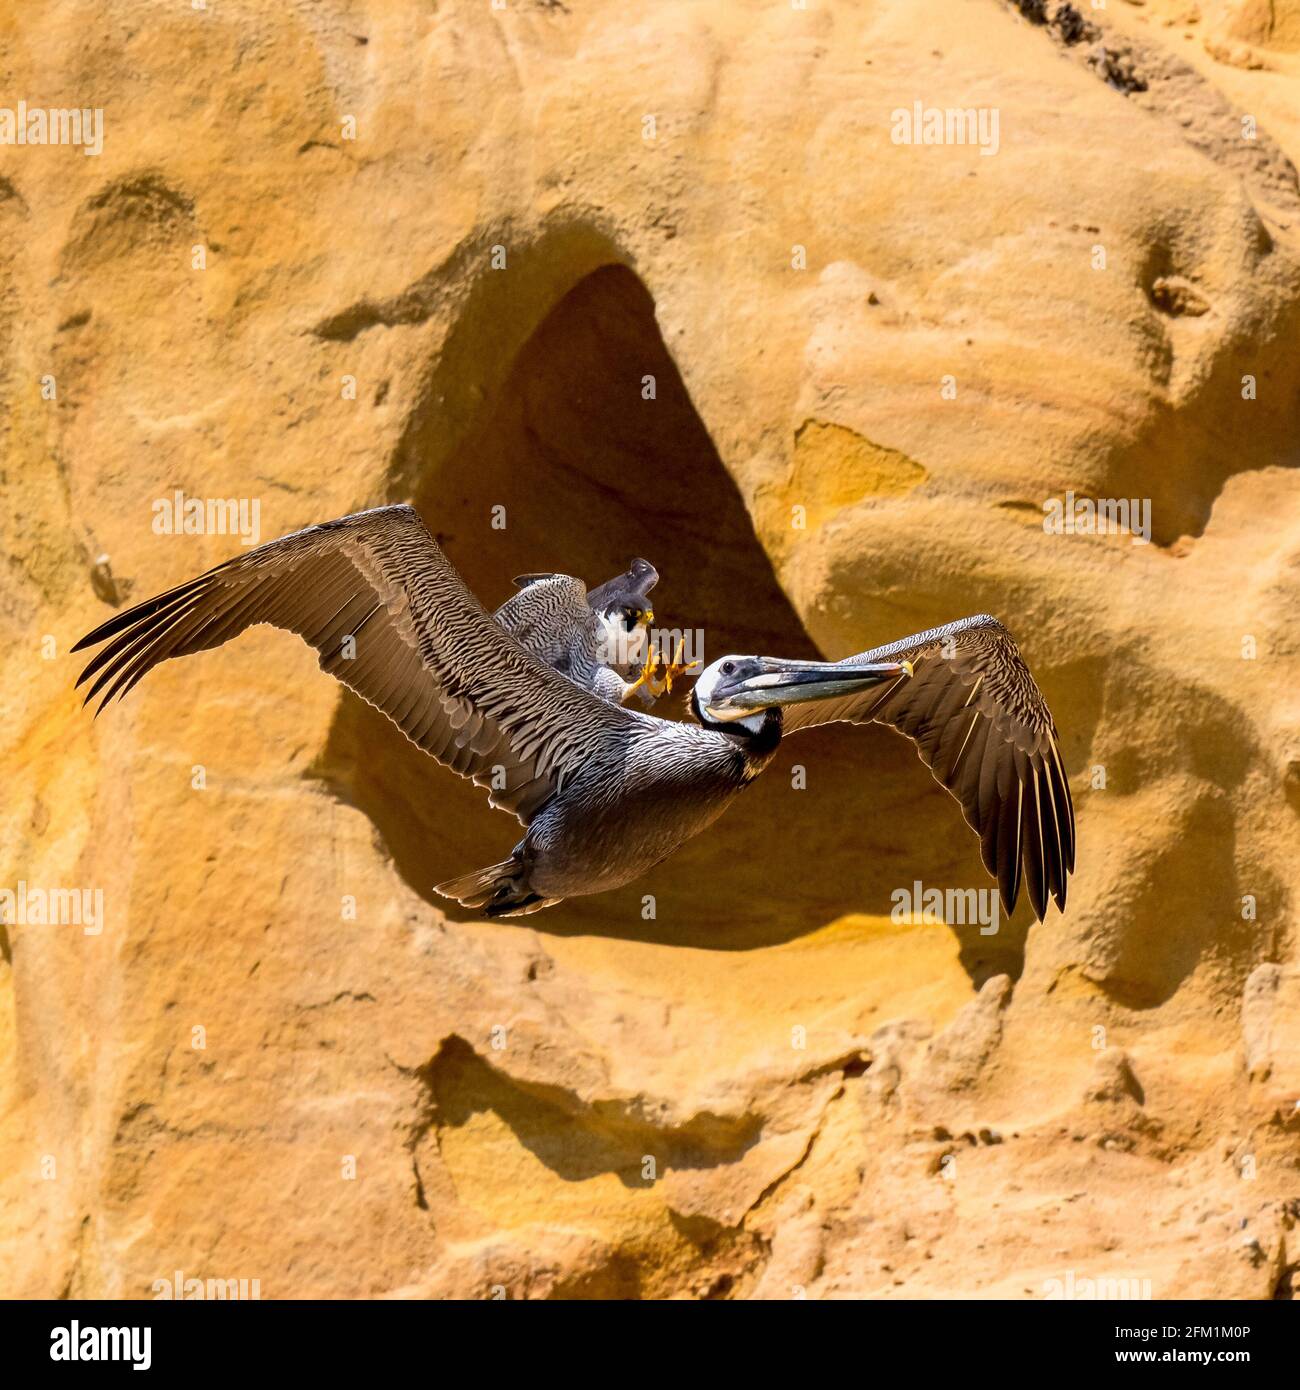 Der Peregrinenfalke ist eine Sekundenbruchteil davon entfernt, seine Krallen in den Kopf des Pelikans einzubetten. SAN DIEGO, USA: Ein FOTOGRAF hat das Unglaubische eingefangen Stockfoto